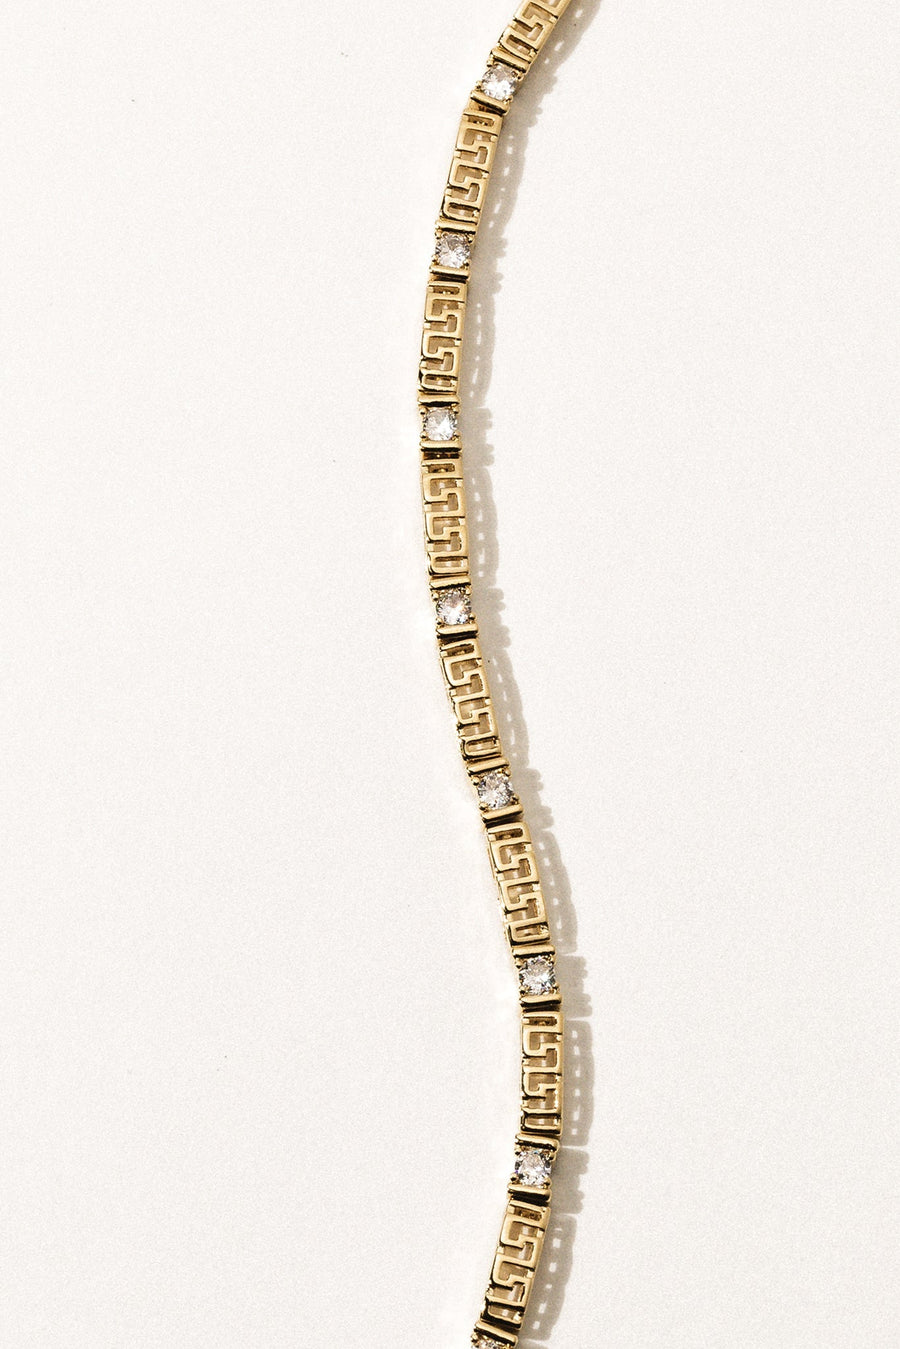 Sparrow Jewelry Gold Brooklyn CZ Bracelet